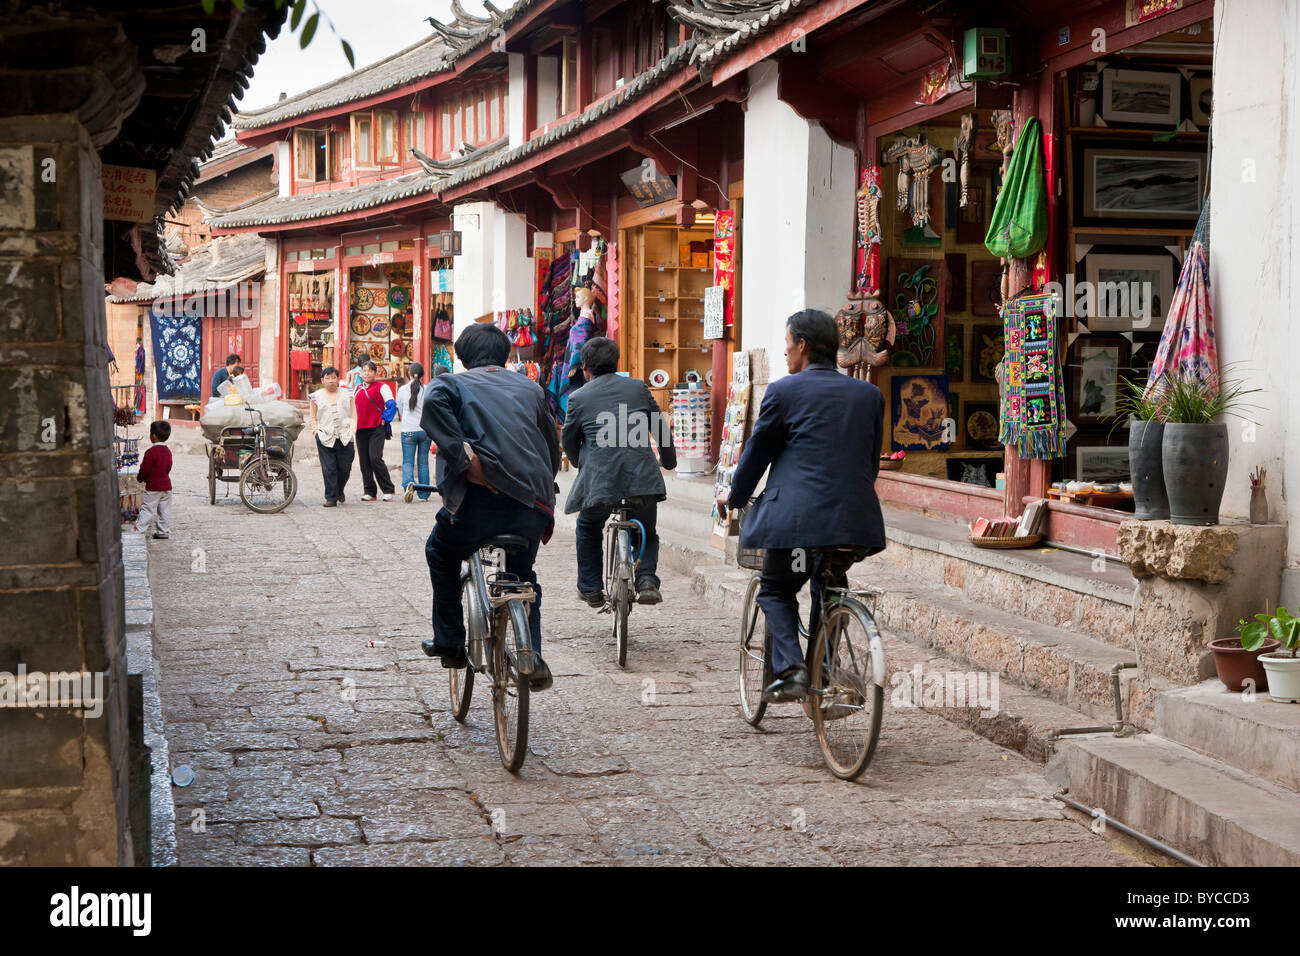 Tre uomini in bicicletta attraverso una stretta corsia pavimentata a Lijiang old town, nella provincia dello Yunnan in Cina. JMH4755 Foto Stock